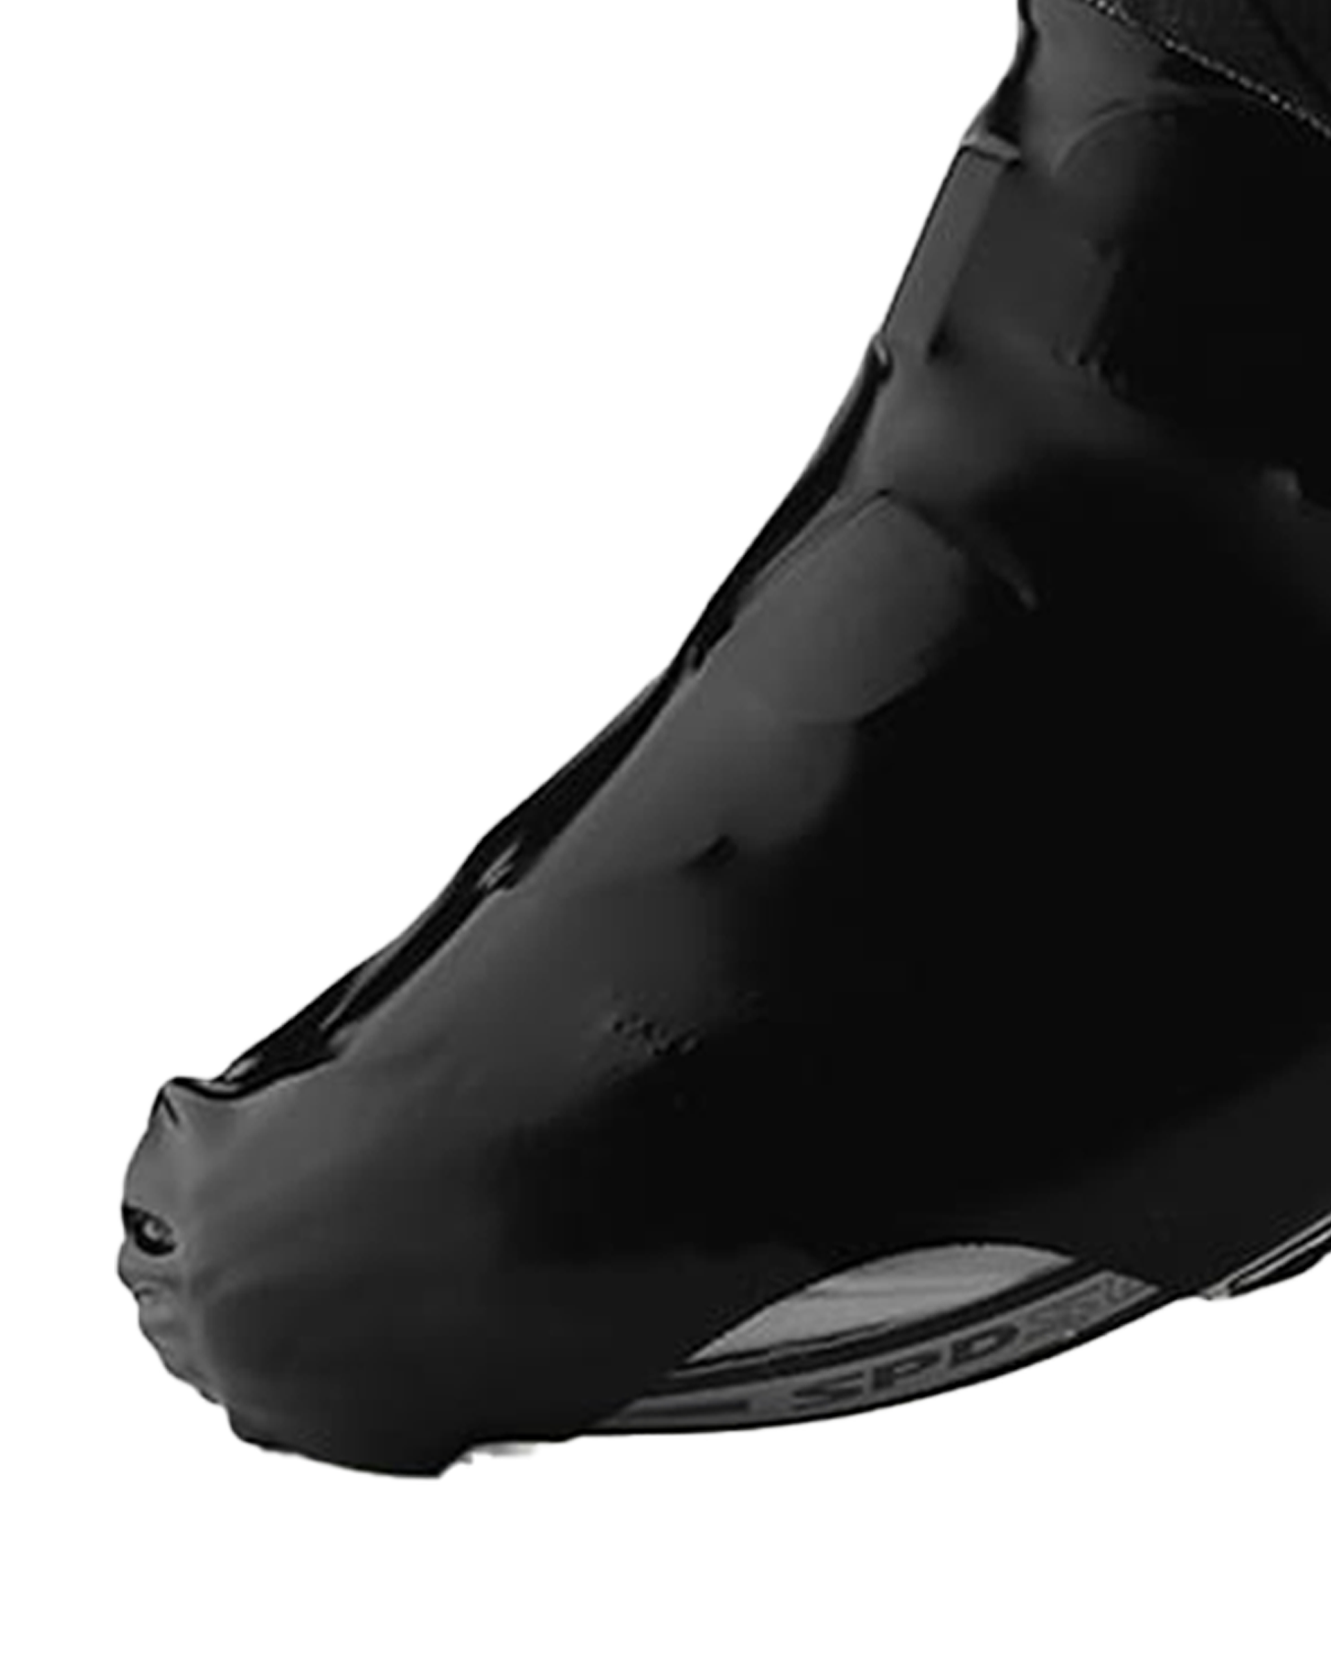 sockeloen-aero-overshoes